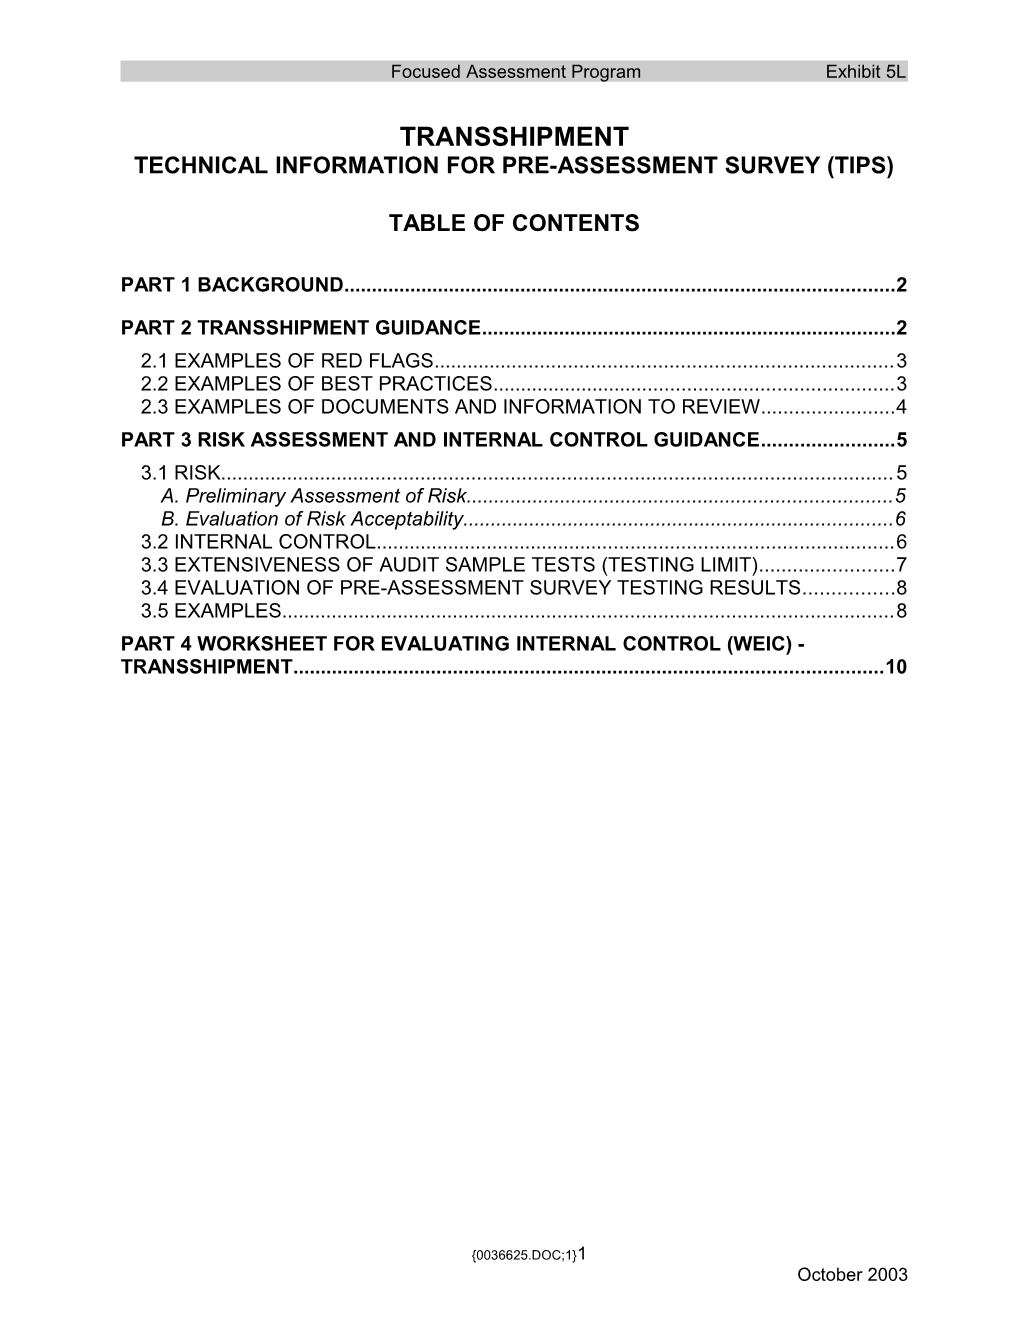 FAP Doc - Exhibit 5L - Transshipment - Technical Information (0036625;1)